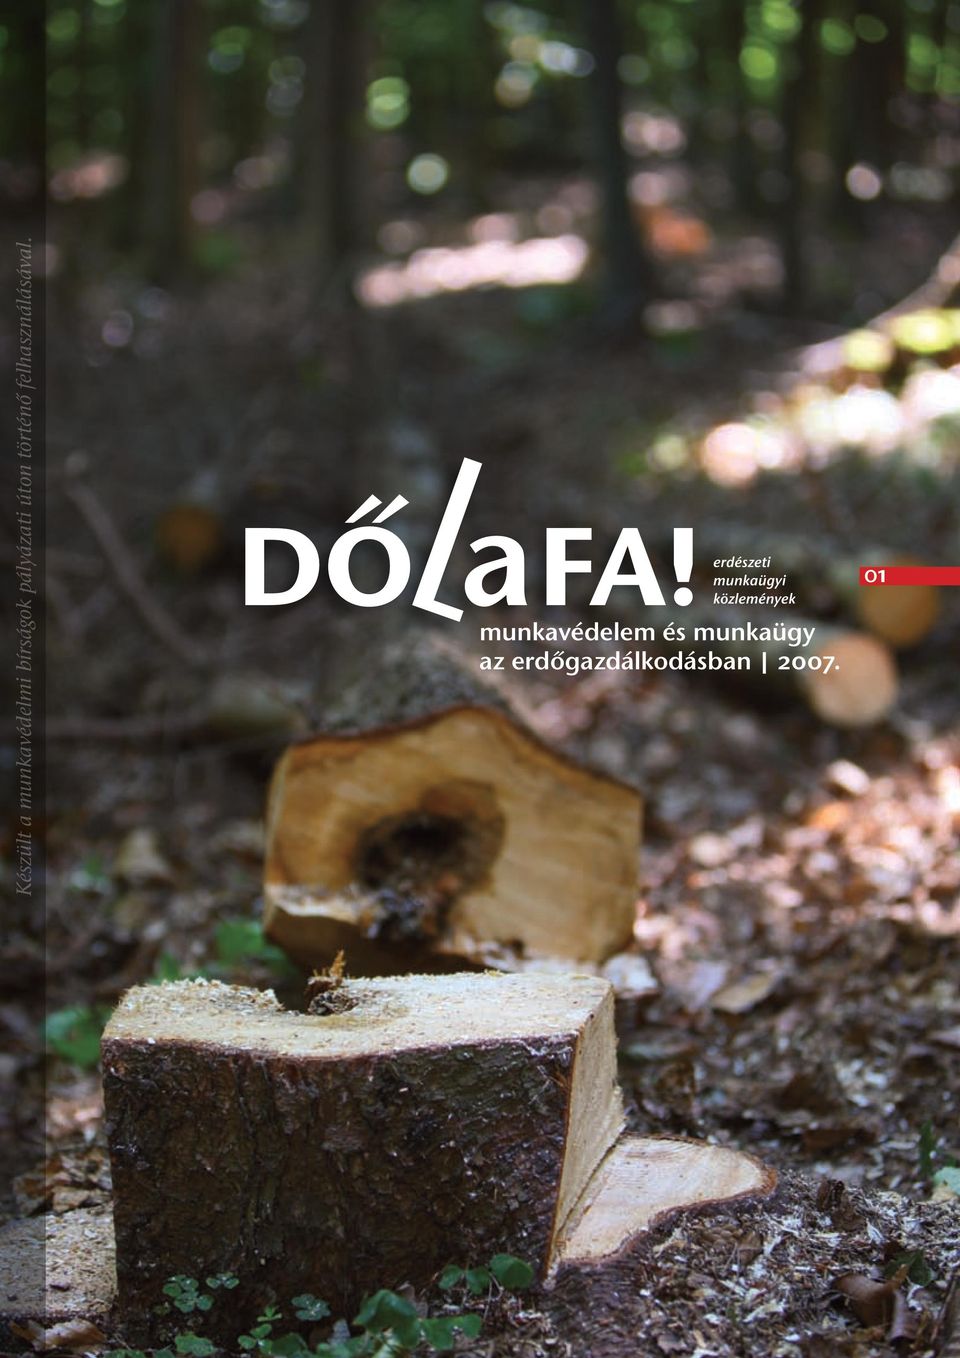 Készült a munkavédelmi bírságok pályázati úton történő felhasználásával.  munkavédelem és munkaügy az erdőgazdálkodásban PDF Ingyenes letöltés